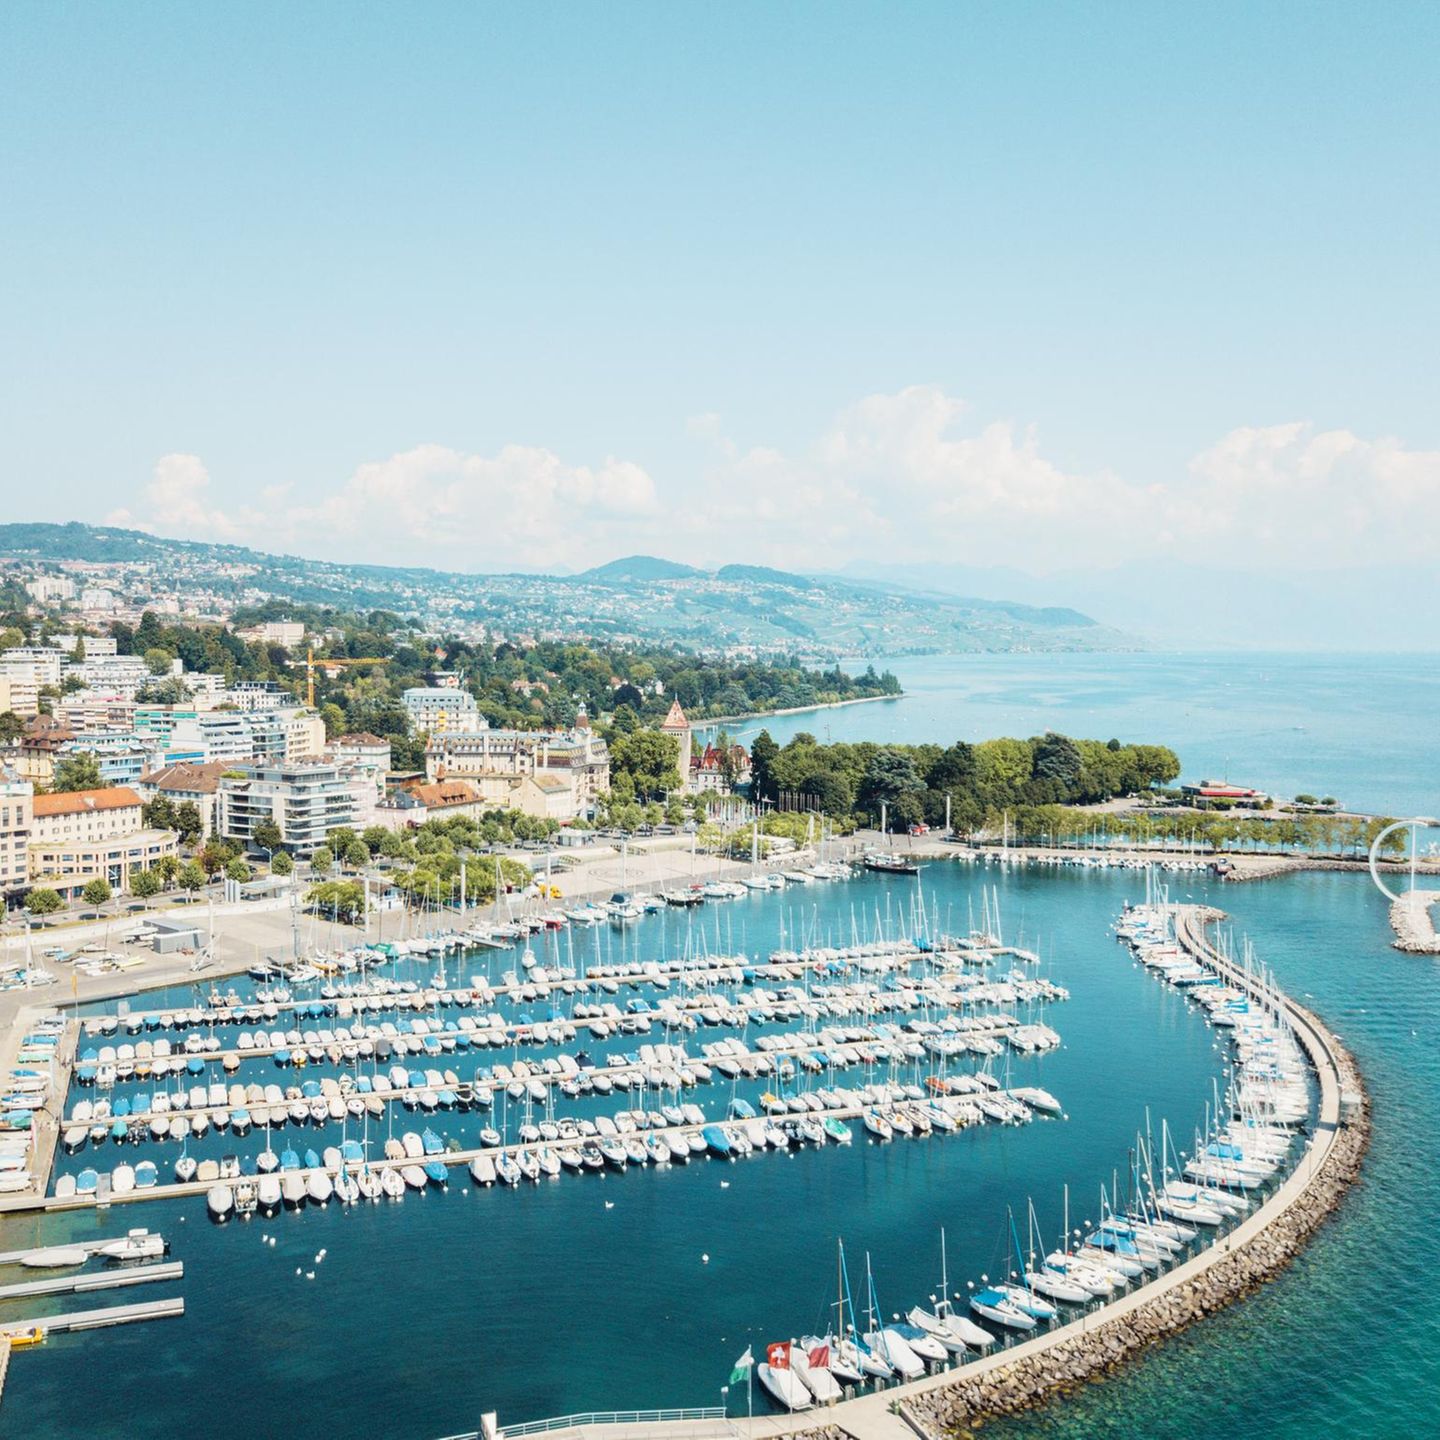 Pittoreske Gebäude, viel Grün und hübsche Boote: Das Hafenviertel Ouchy von Lausanne eignet sich mit seinem mediterranen Flair wunderbar für einen ausgedehnten Spaziergang. 